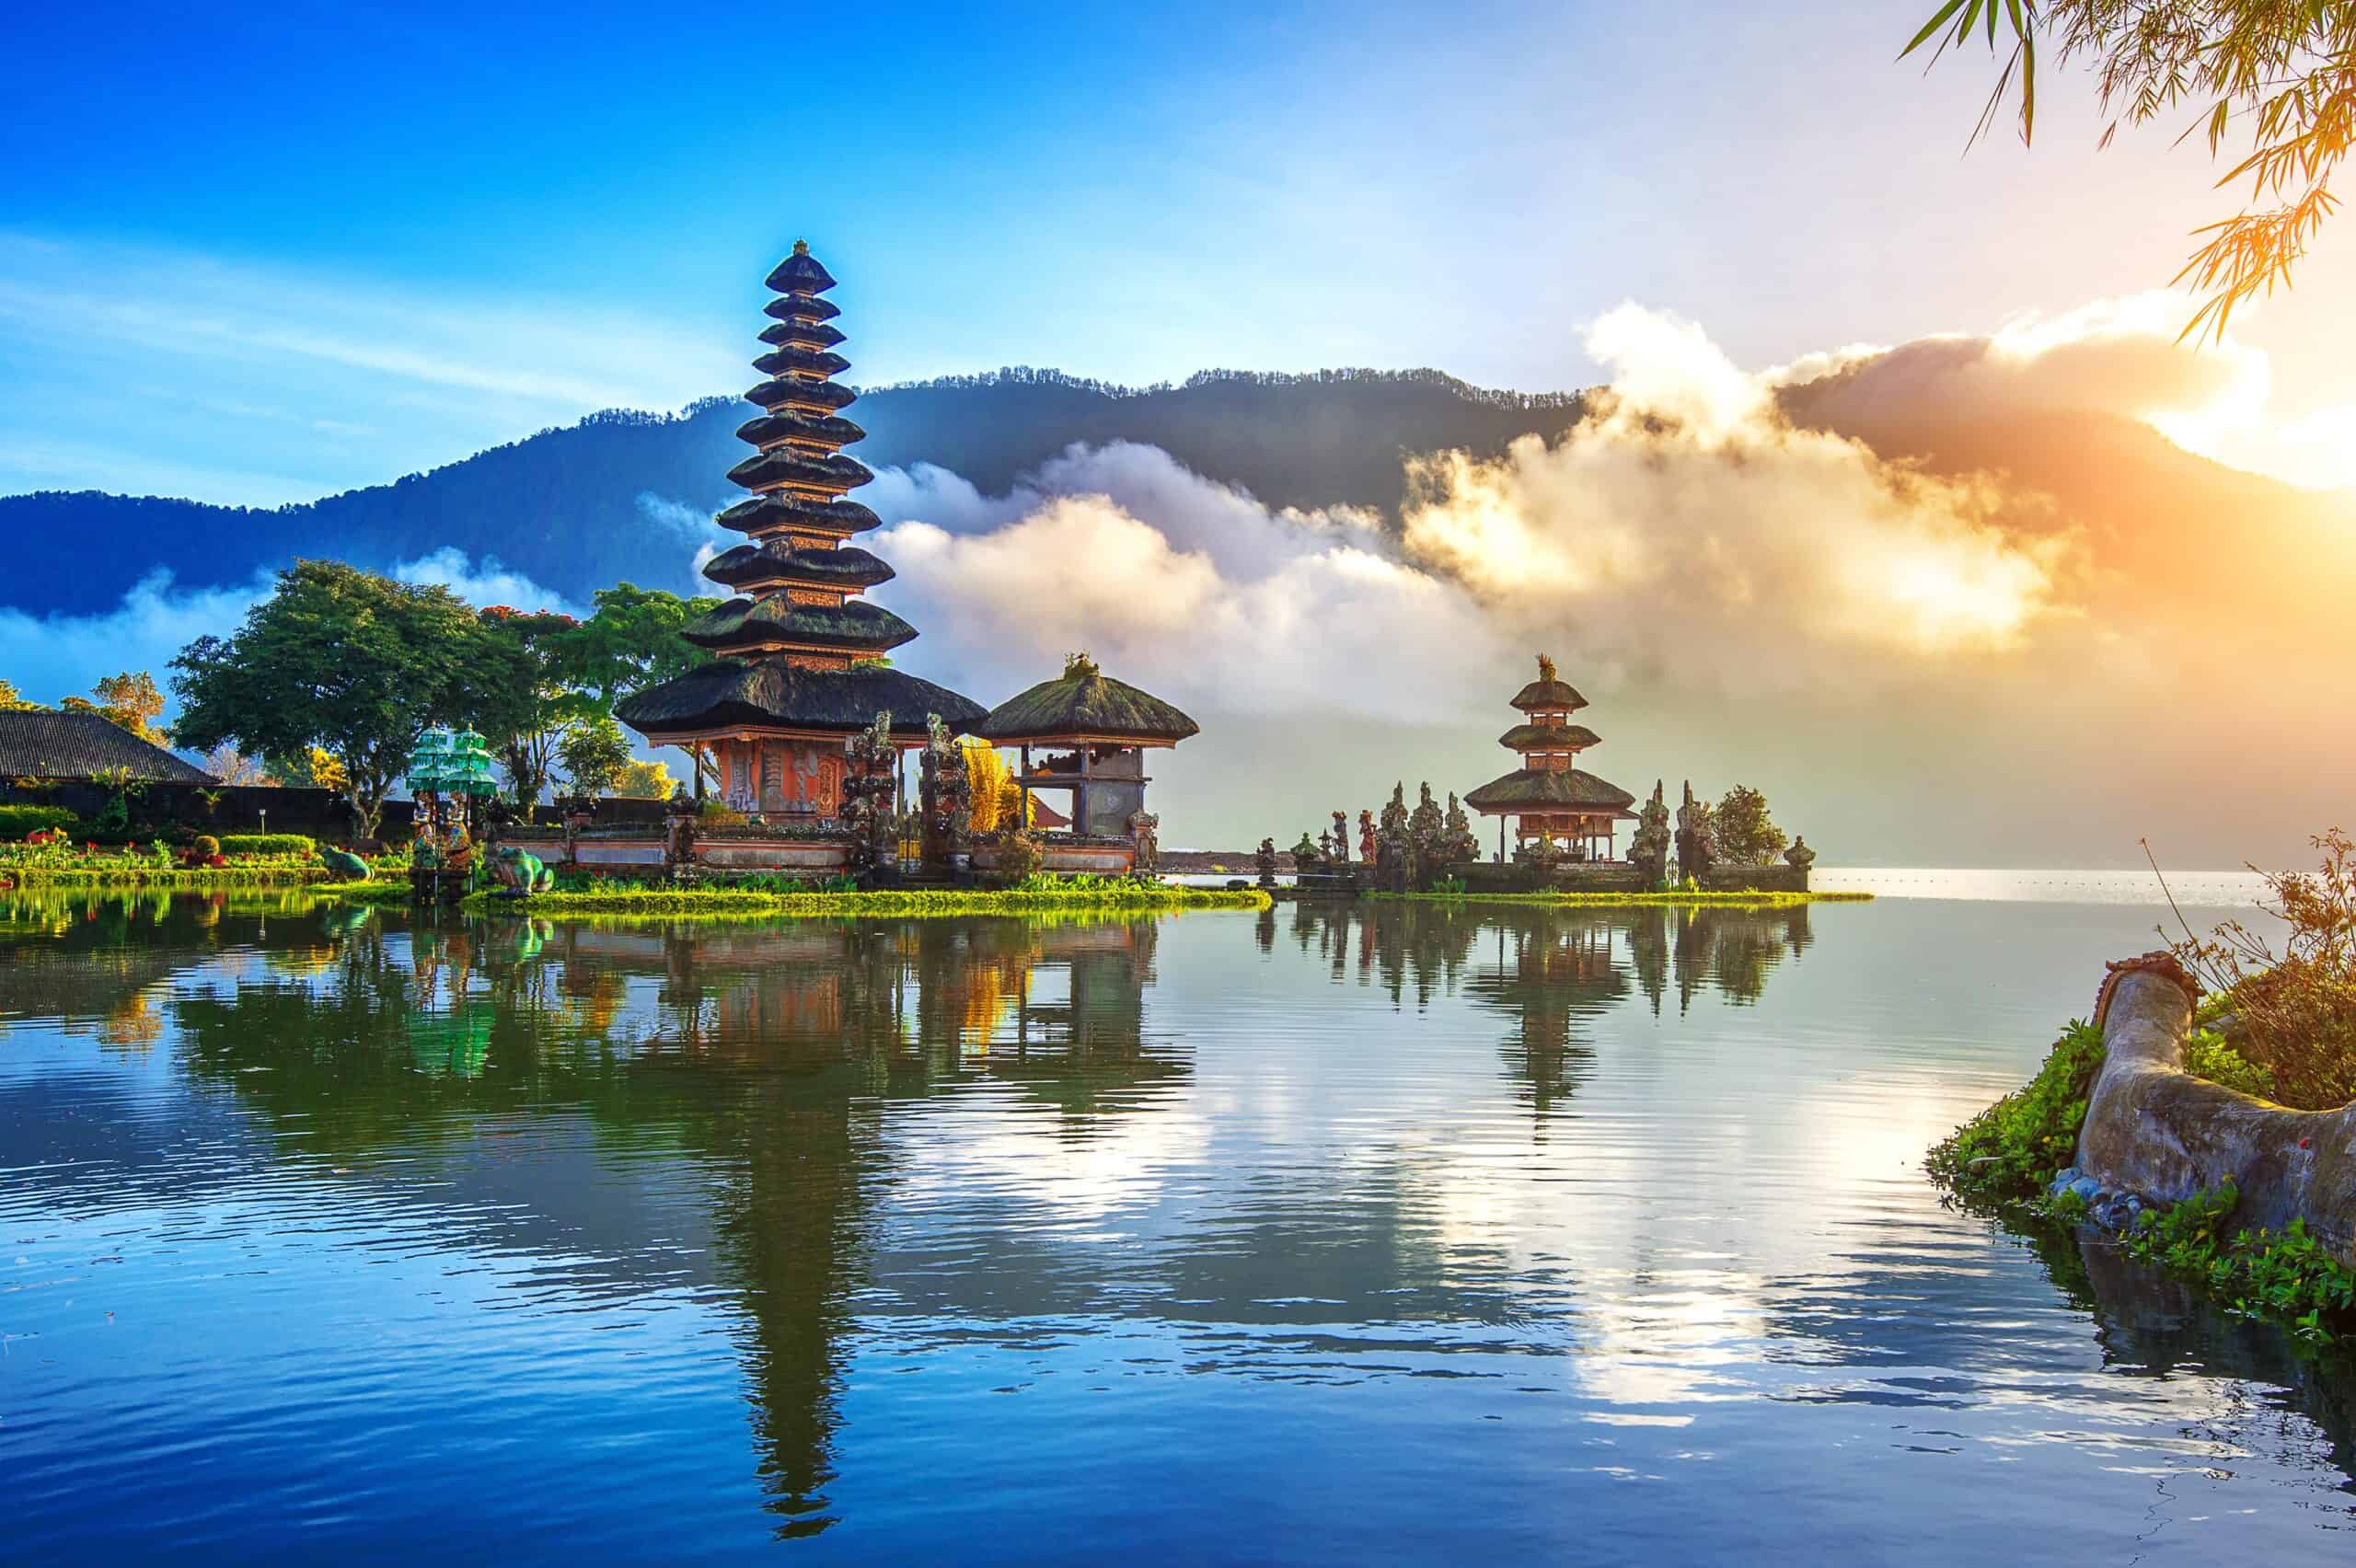 Indonesia | pura ulun danu bratan temple in Bali.